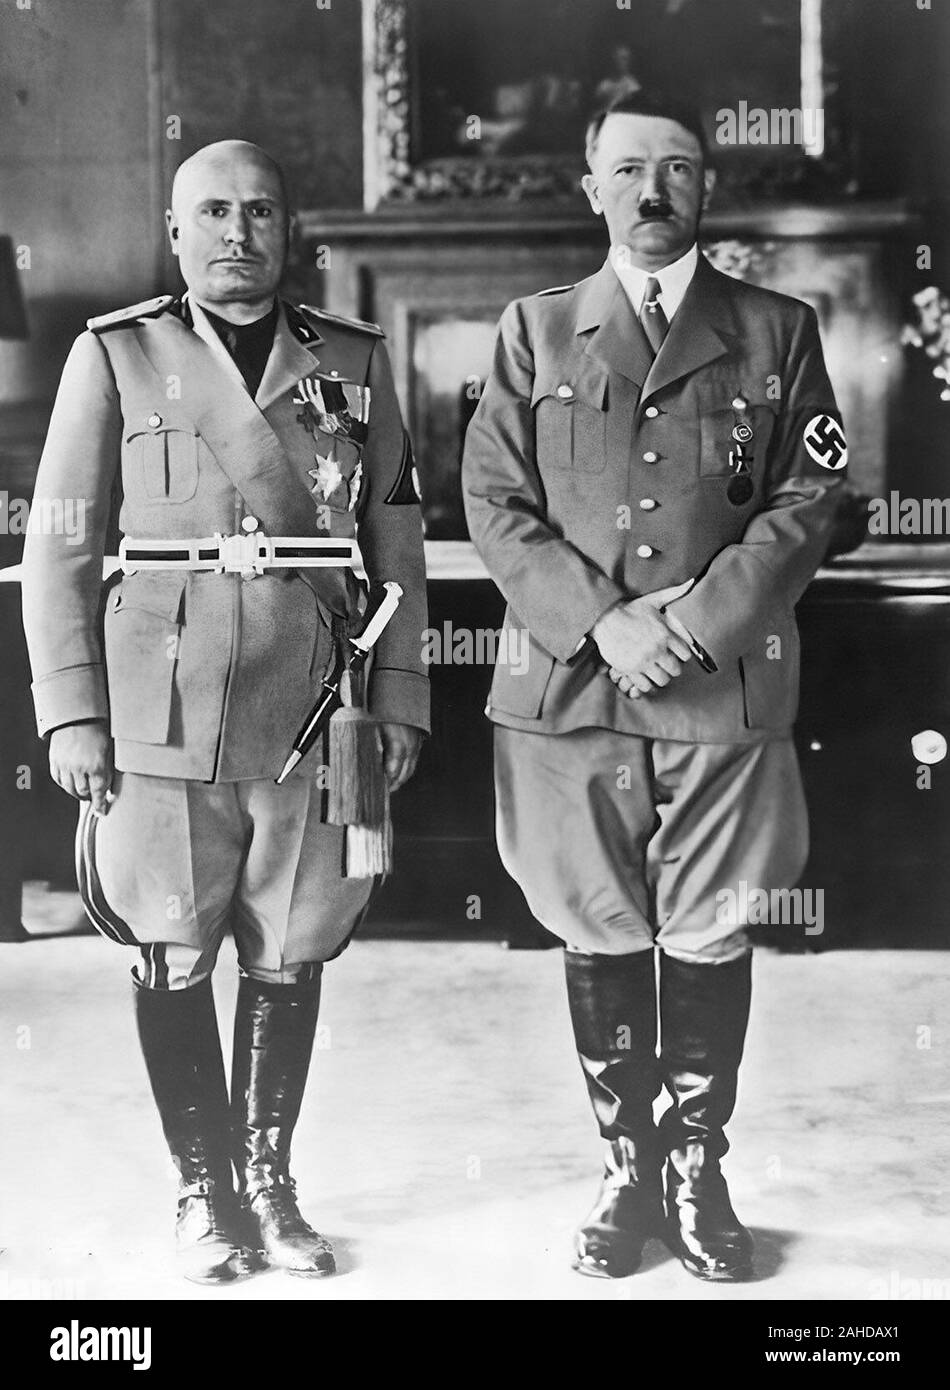 Adolf Hitler et Benito Mussolini le pacte d'acier (allemand : Stahlpakt ; italien : Patto d'Acciaio), connu officiellement comme le Pacte d'amitié et d'alliance entre l'Allemagne et l'Italie, était un accord entre l'Italie fasciste et l'Allemagne nazie signée le 22 mai 1939 Banque D'Images